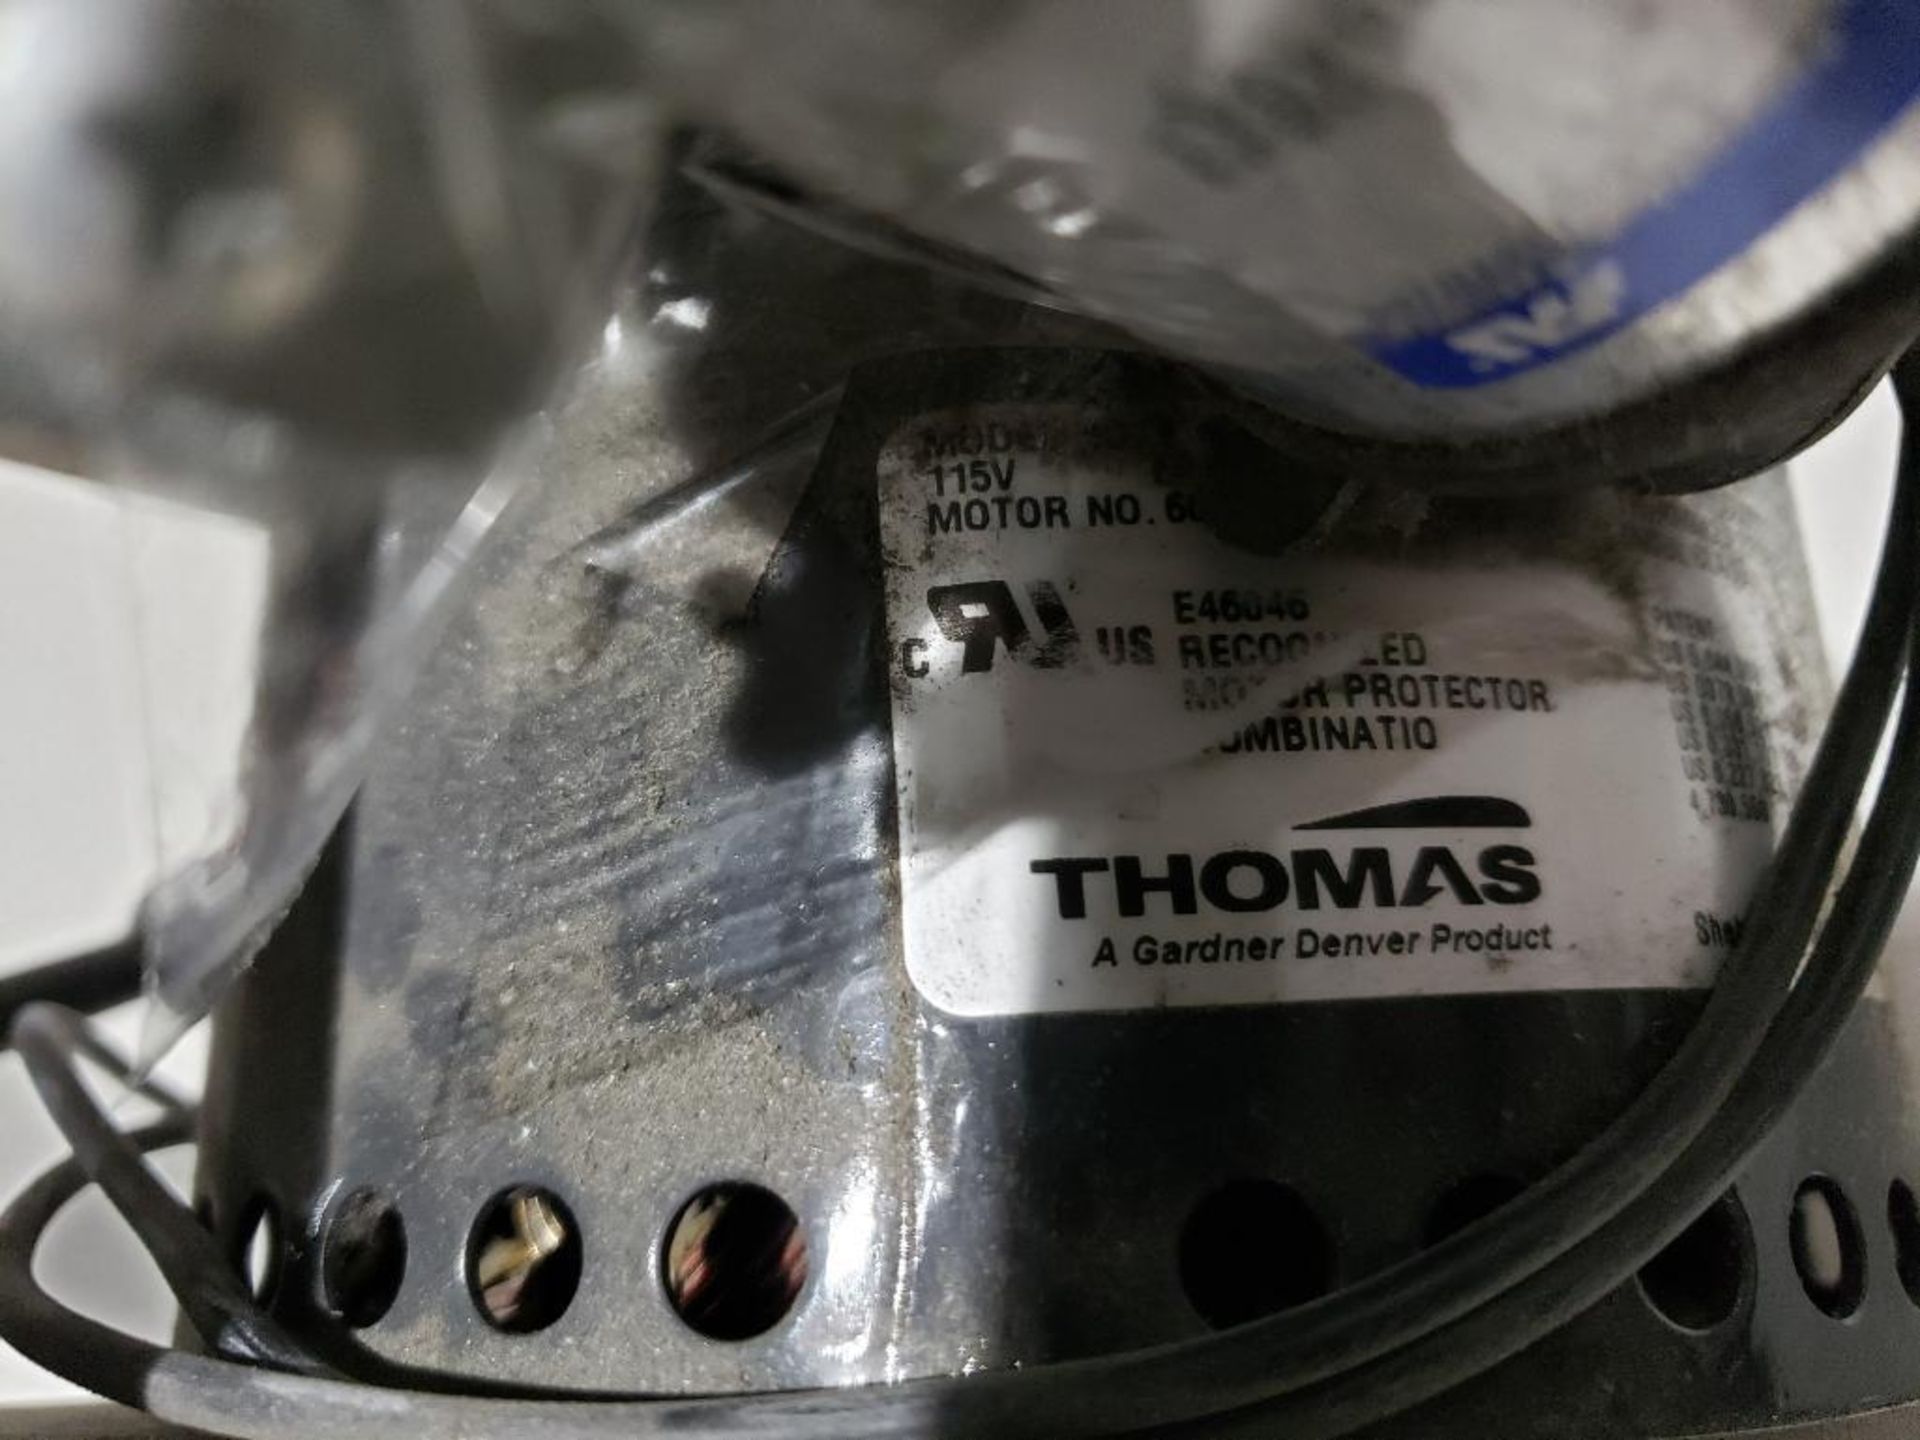 Thomas Gardner Denver oil-less piston air compressor vacuum pump. Model 2680CE44. - Image 4 of 7